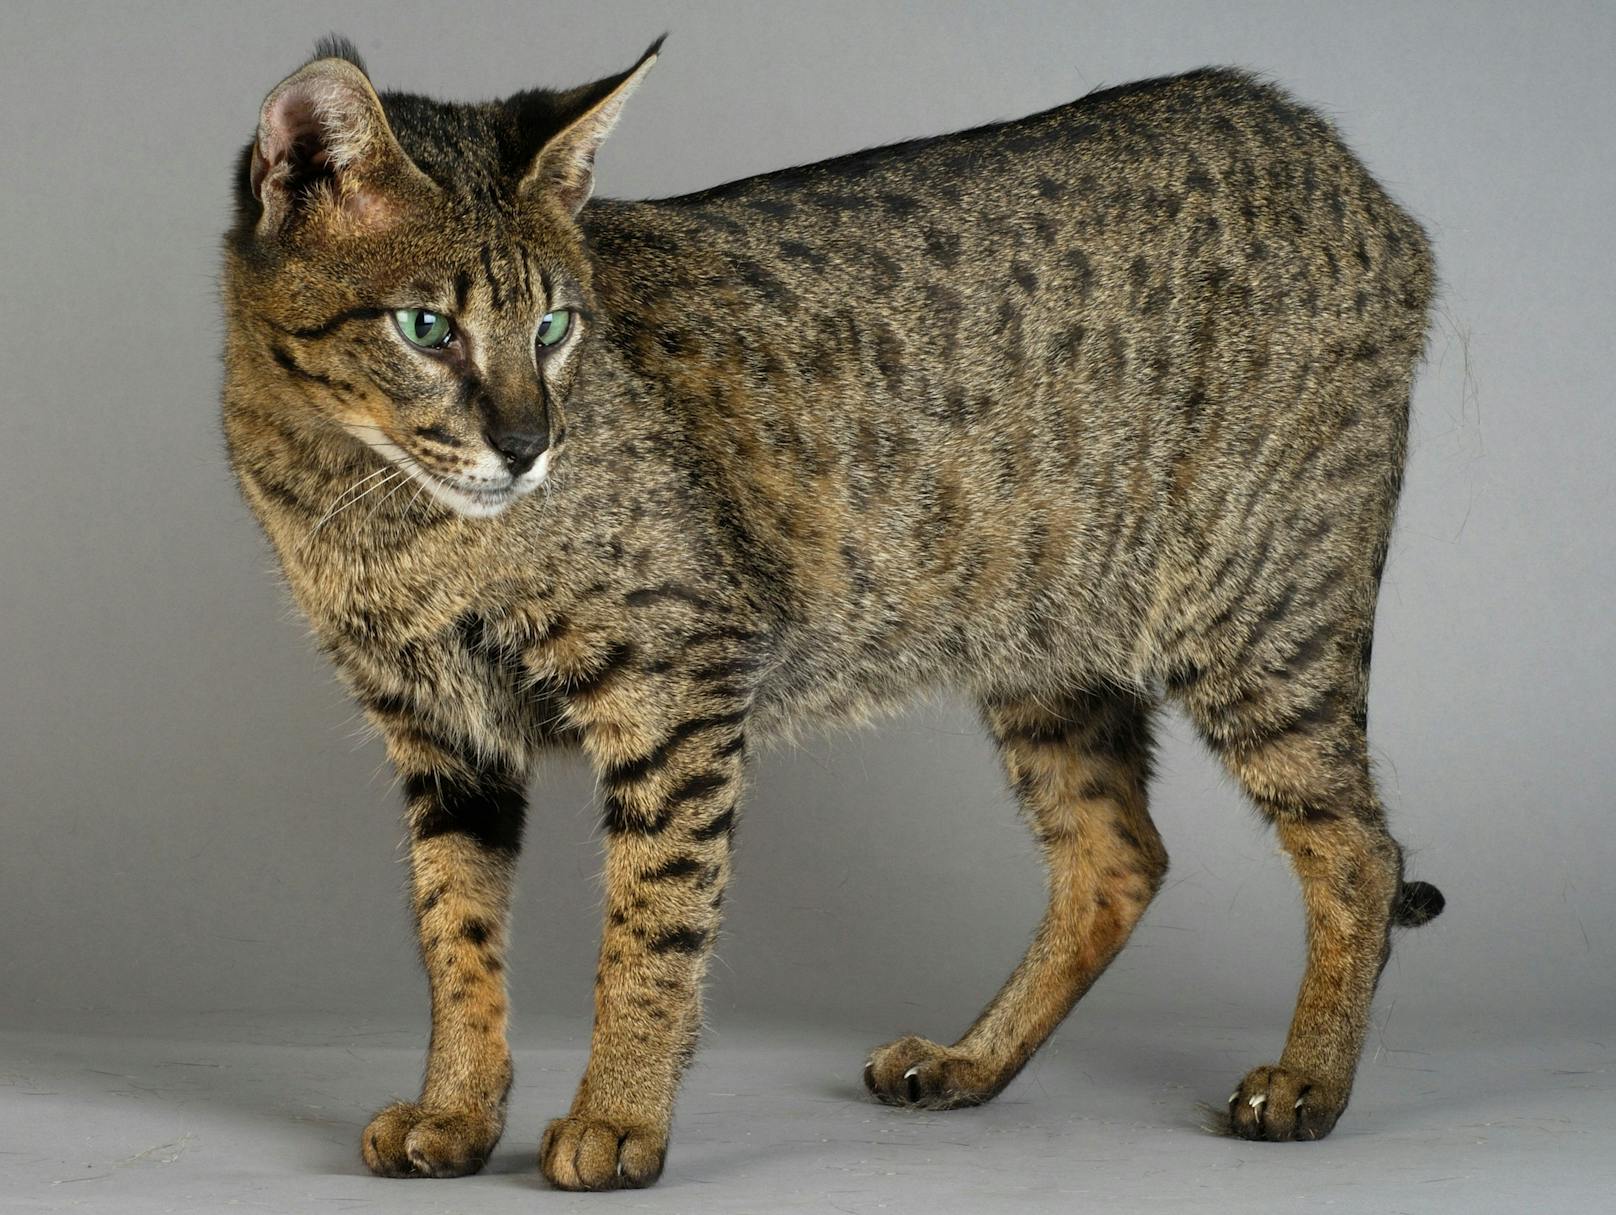 Wunderschön, aber leider eine Zwangskreuzung: Die Savannah-Katze.